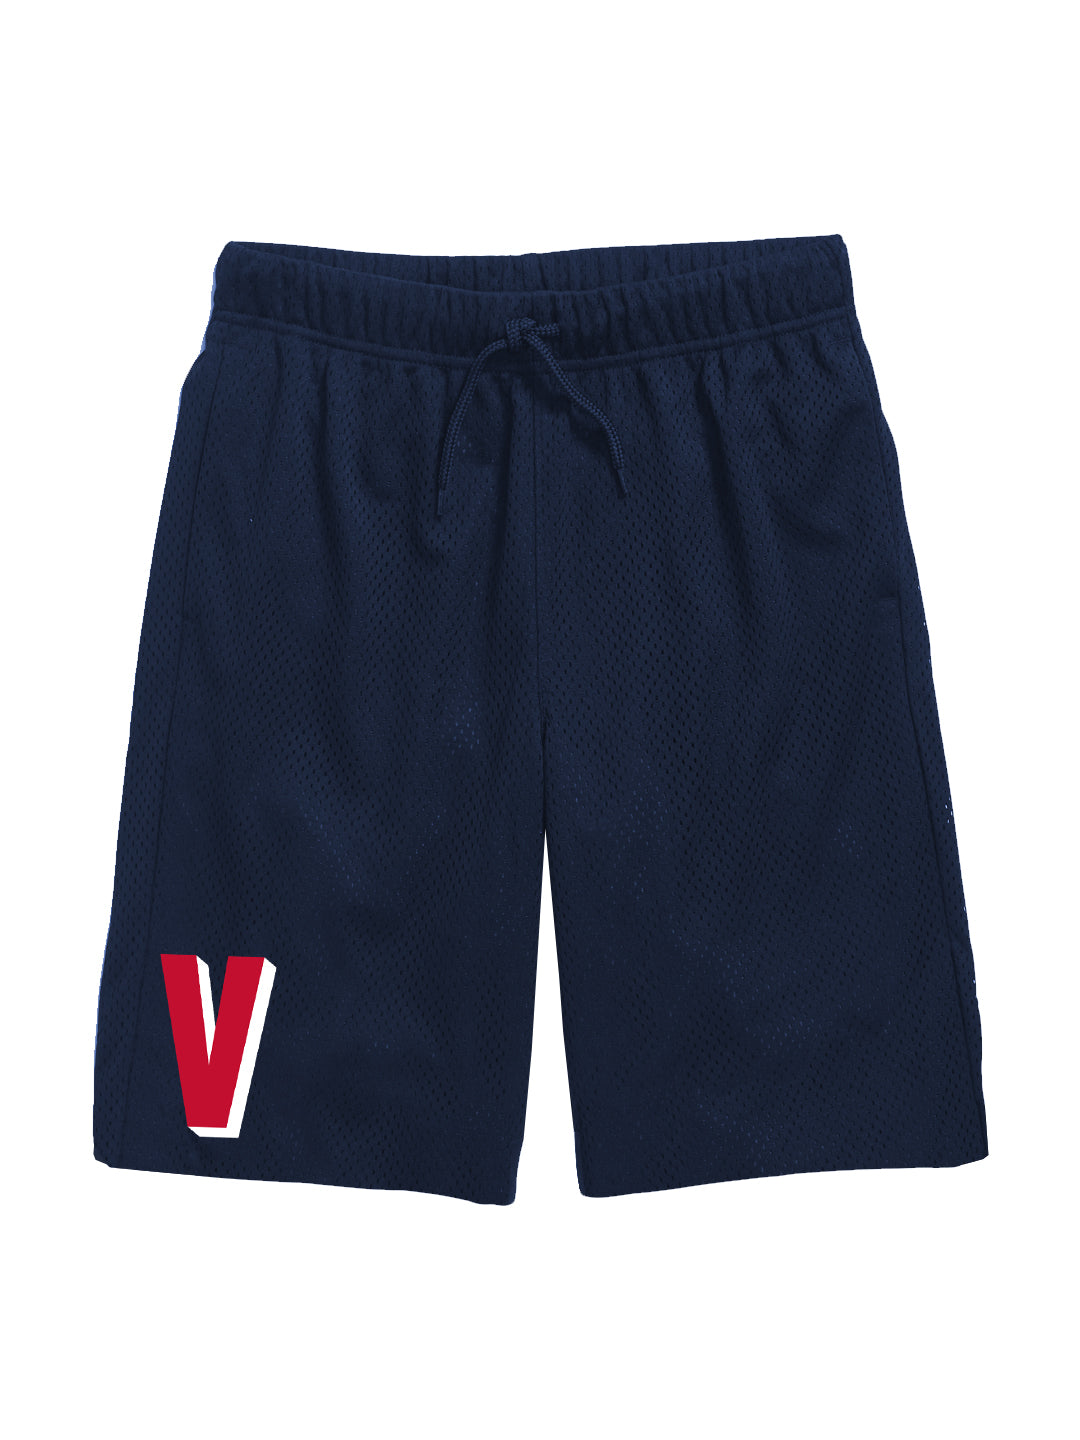 Village 'V' Youth Shorts